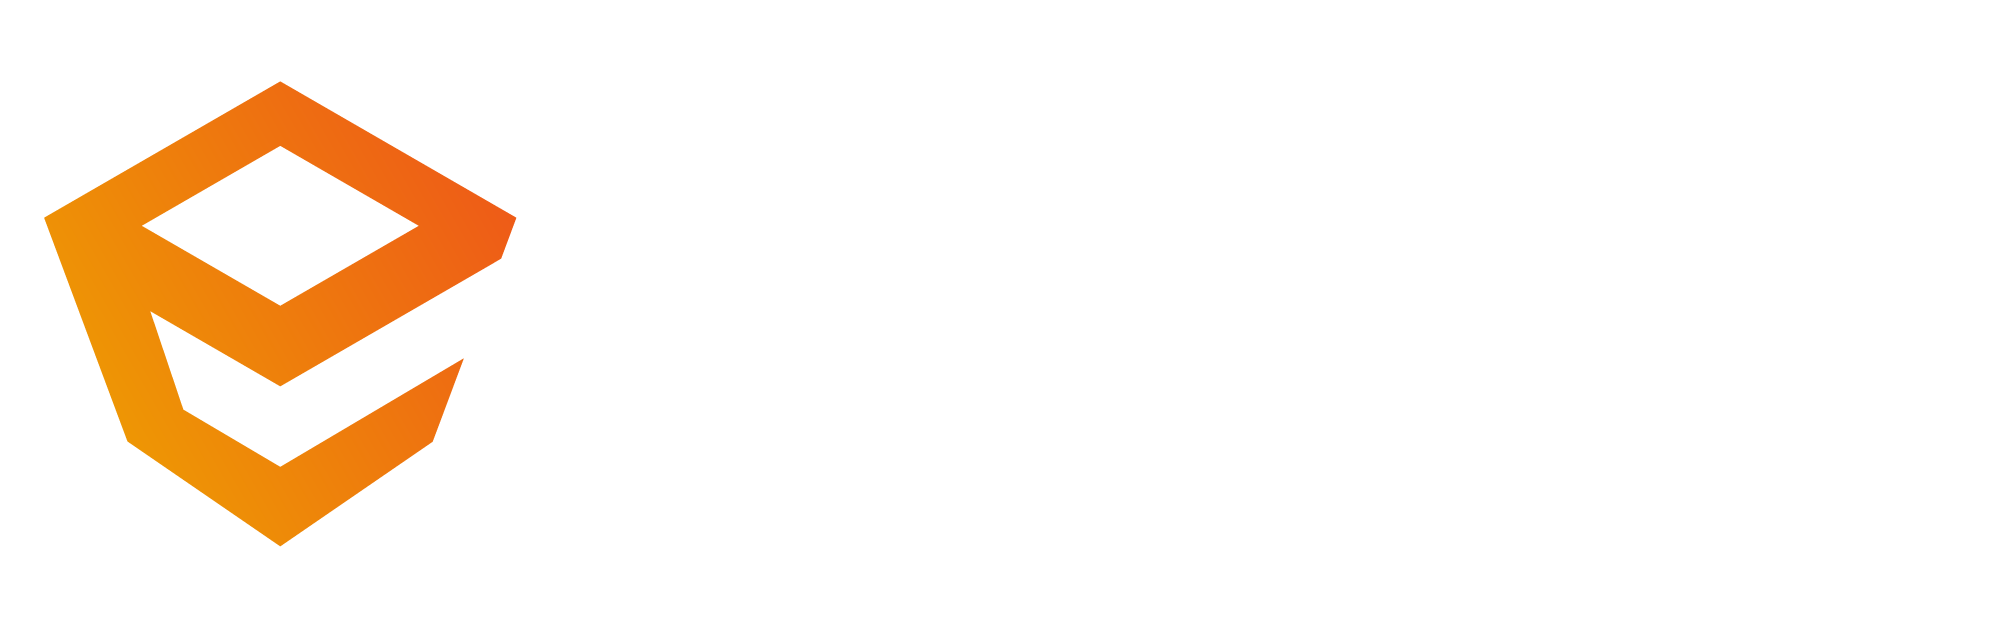 Enscape-Premium-Partner-Logo-Reversed